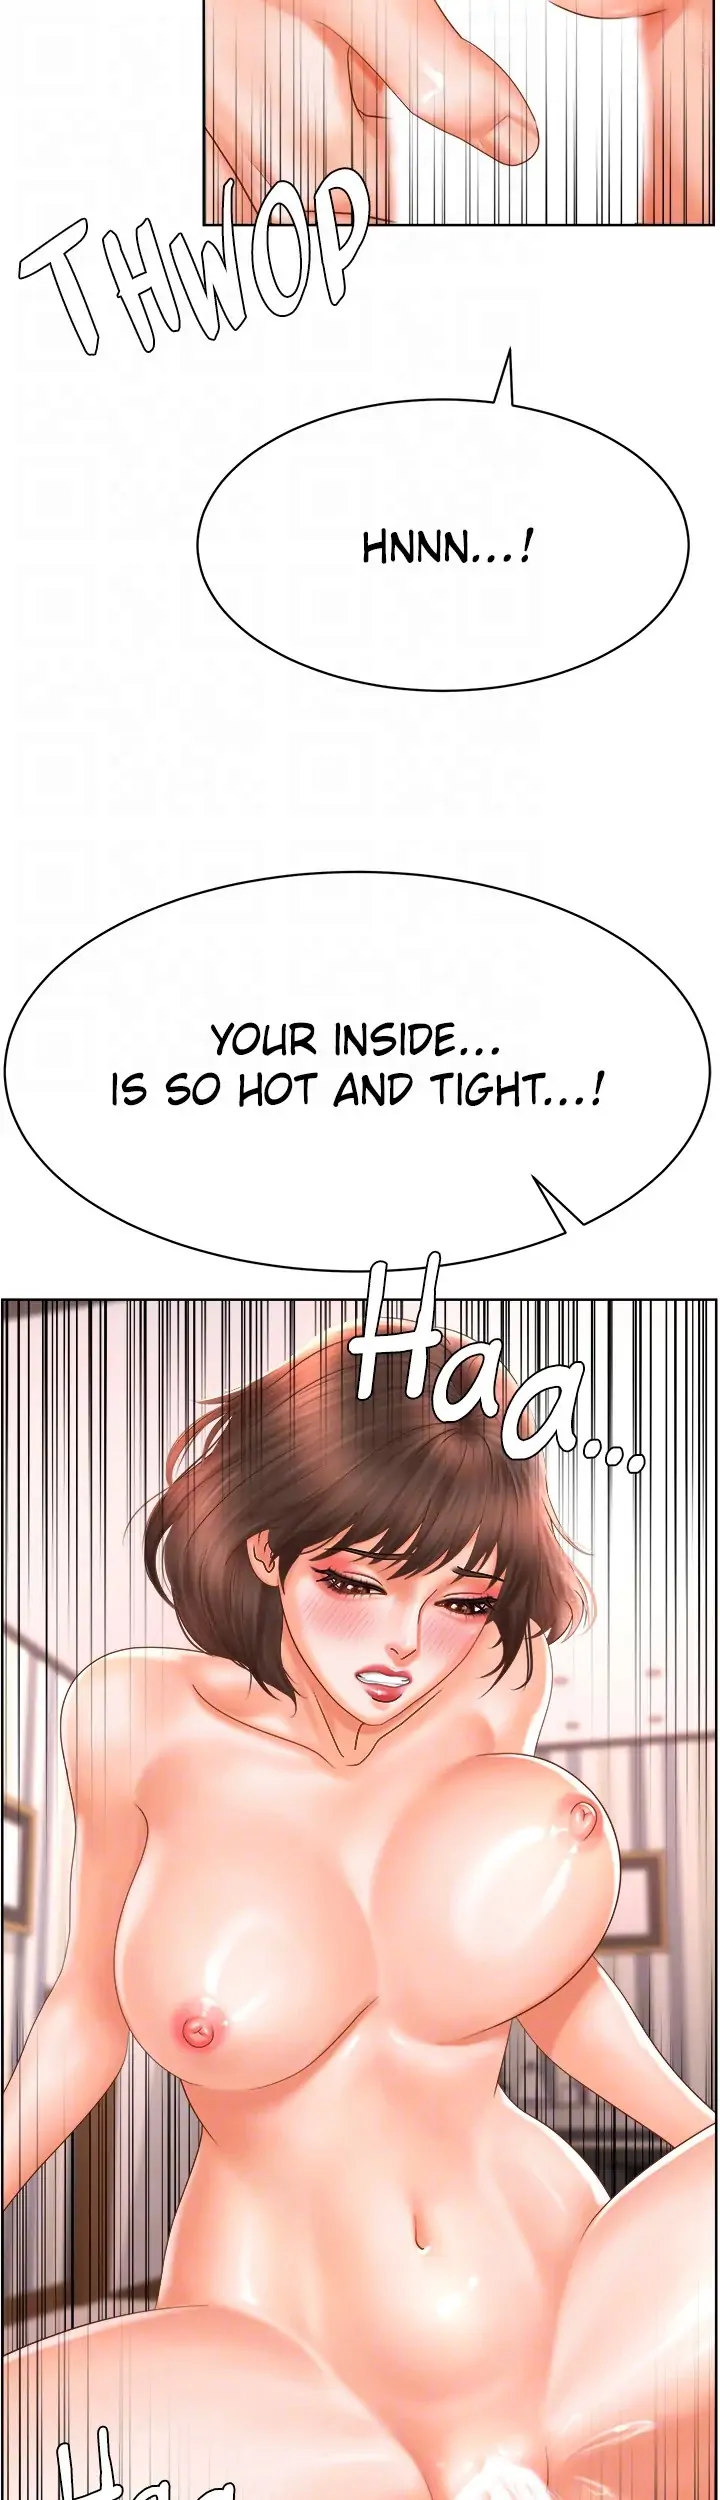 Sexy Manga Club - Chapter 17 Page 34